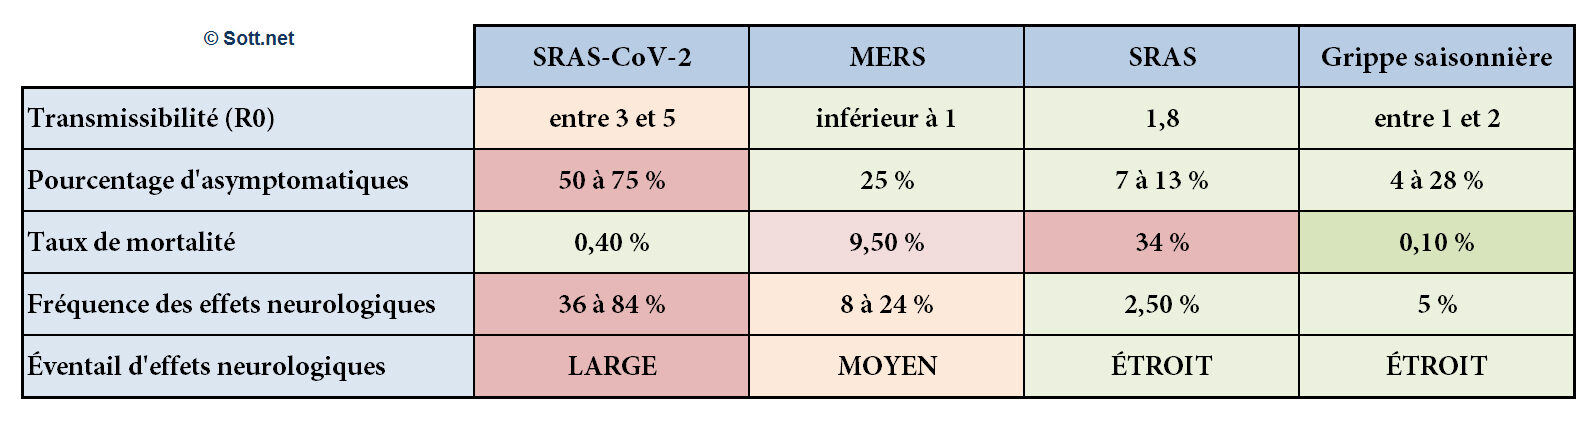 Le Sras-Cov-2 comparé au MERS, au SRAS et à la grippe saisonnière